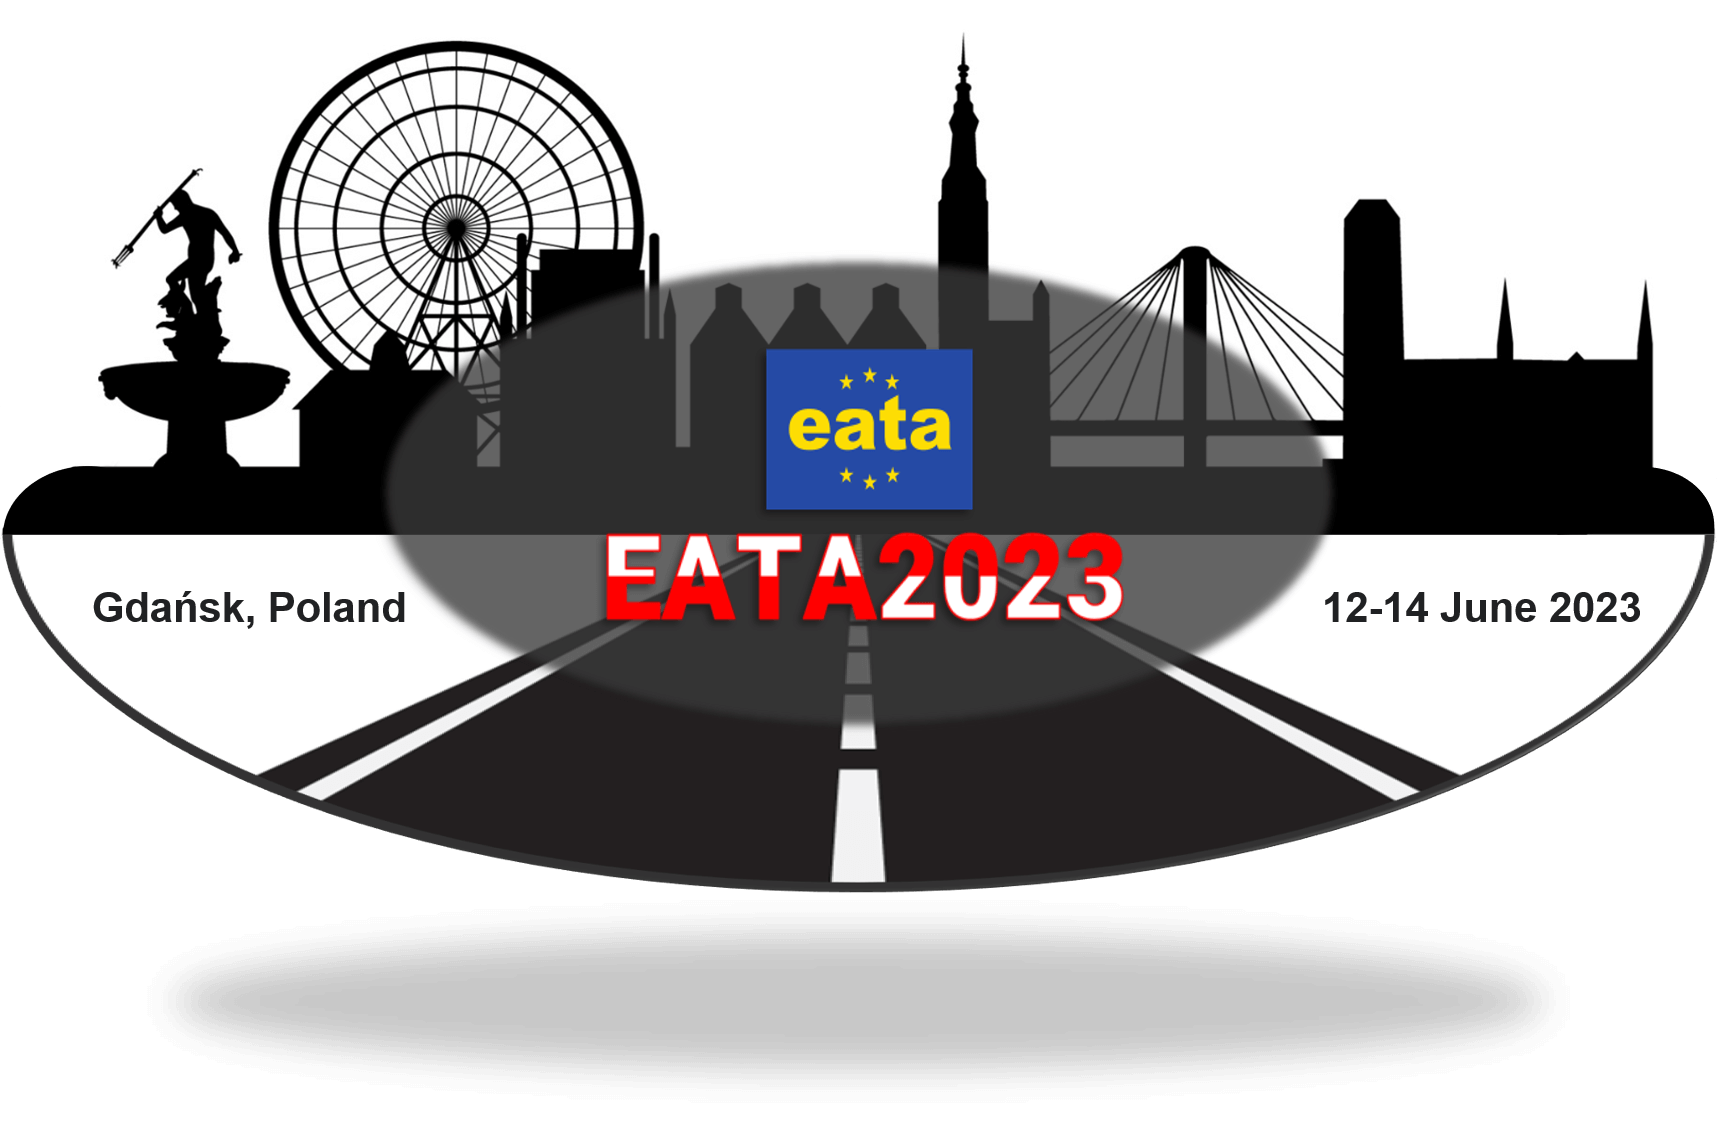 EATA2023 10th EATA Conference